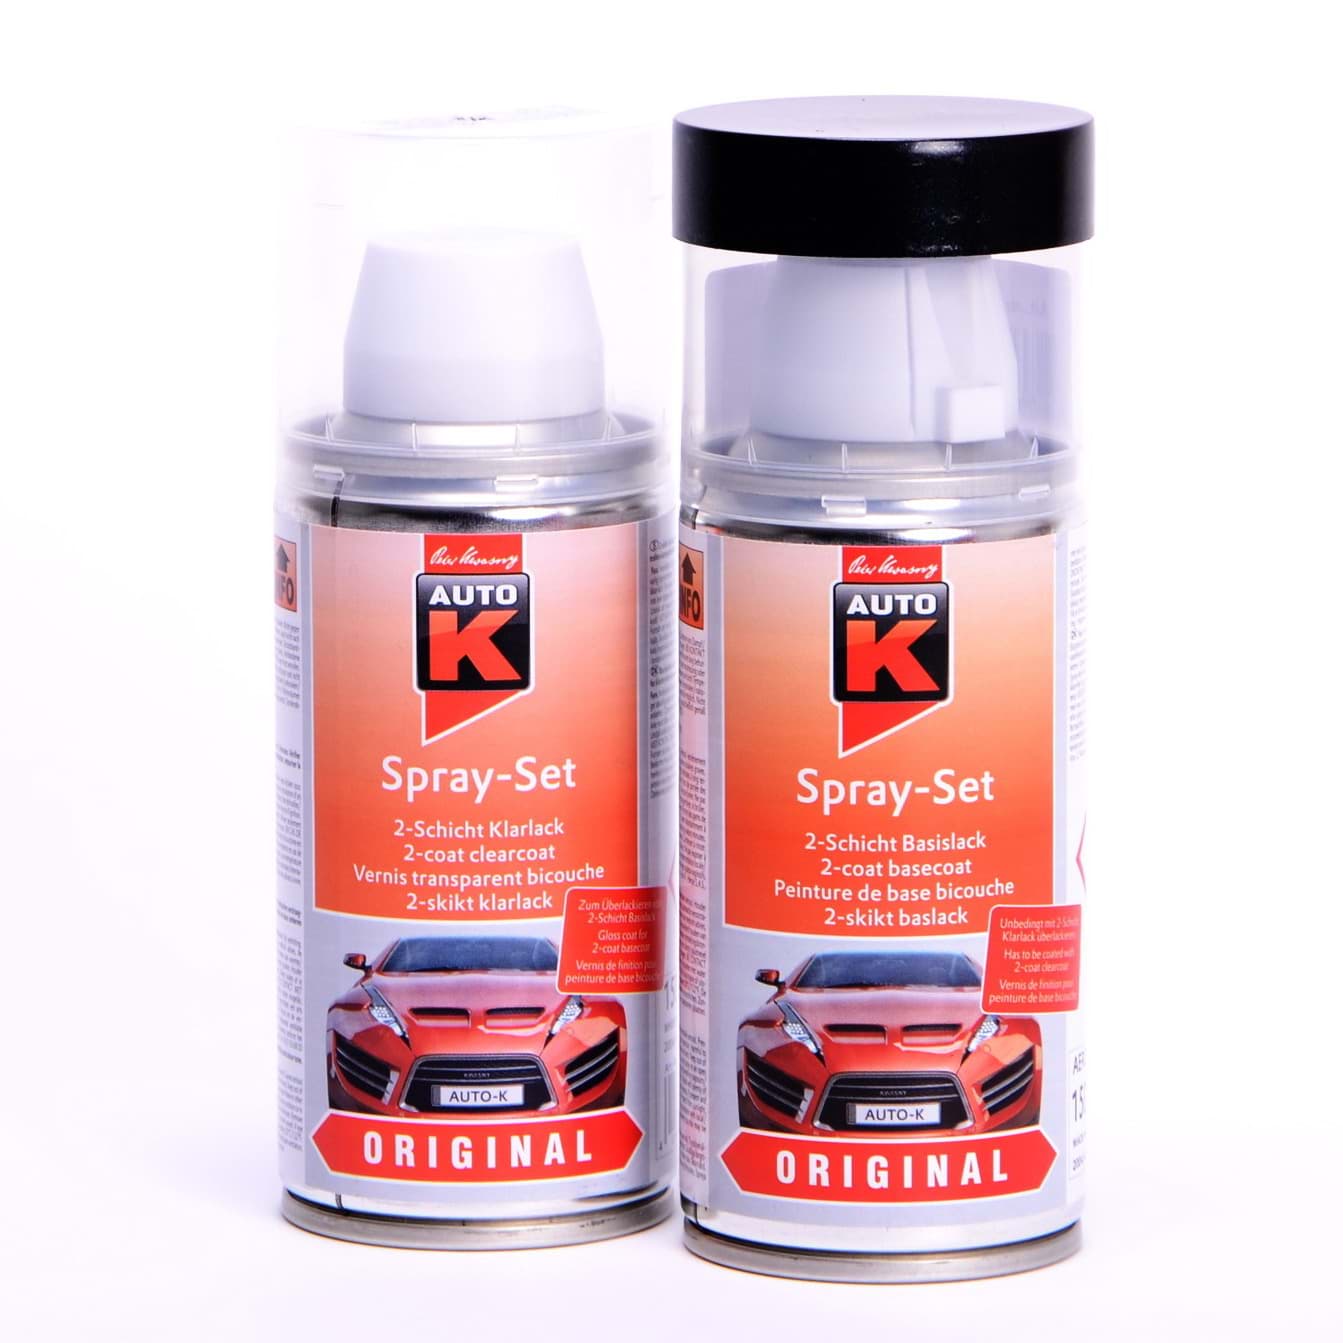 Afbeelding van Auto-K Spray-Set Autolack für Opel 151 Mirage met 21463